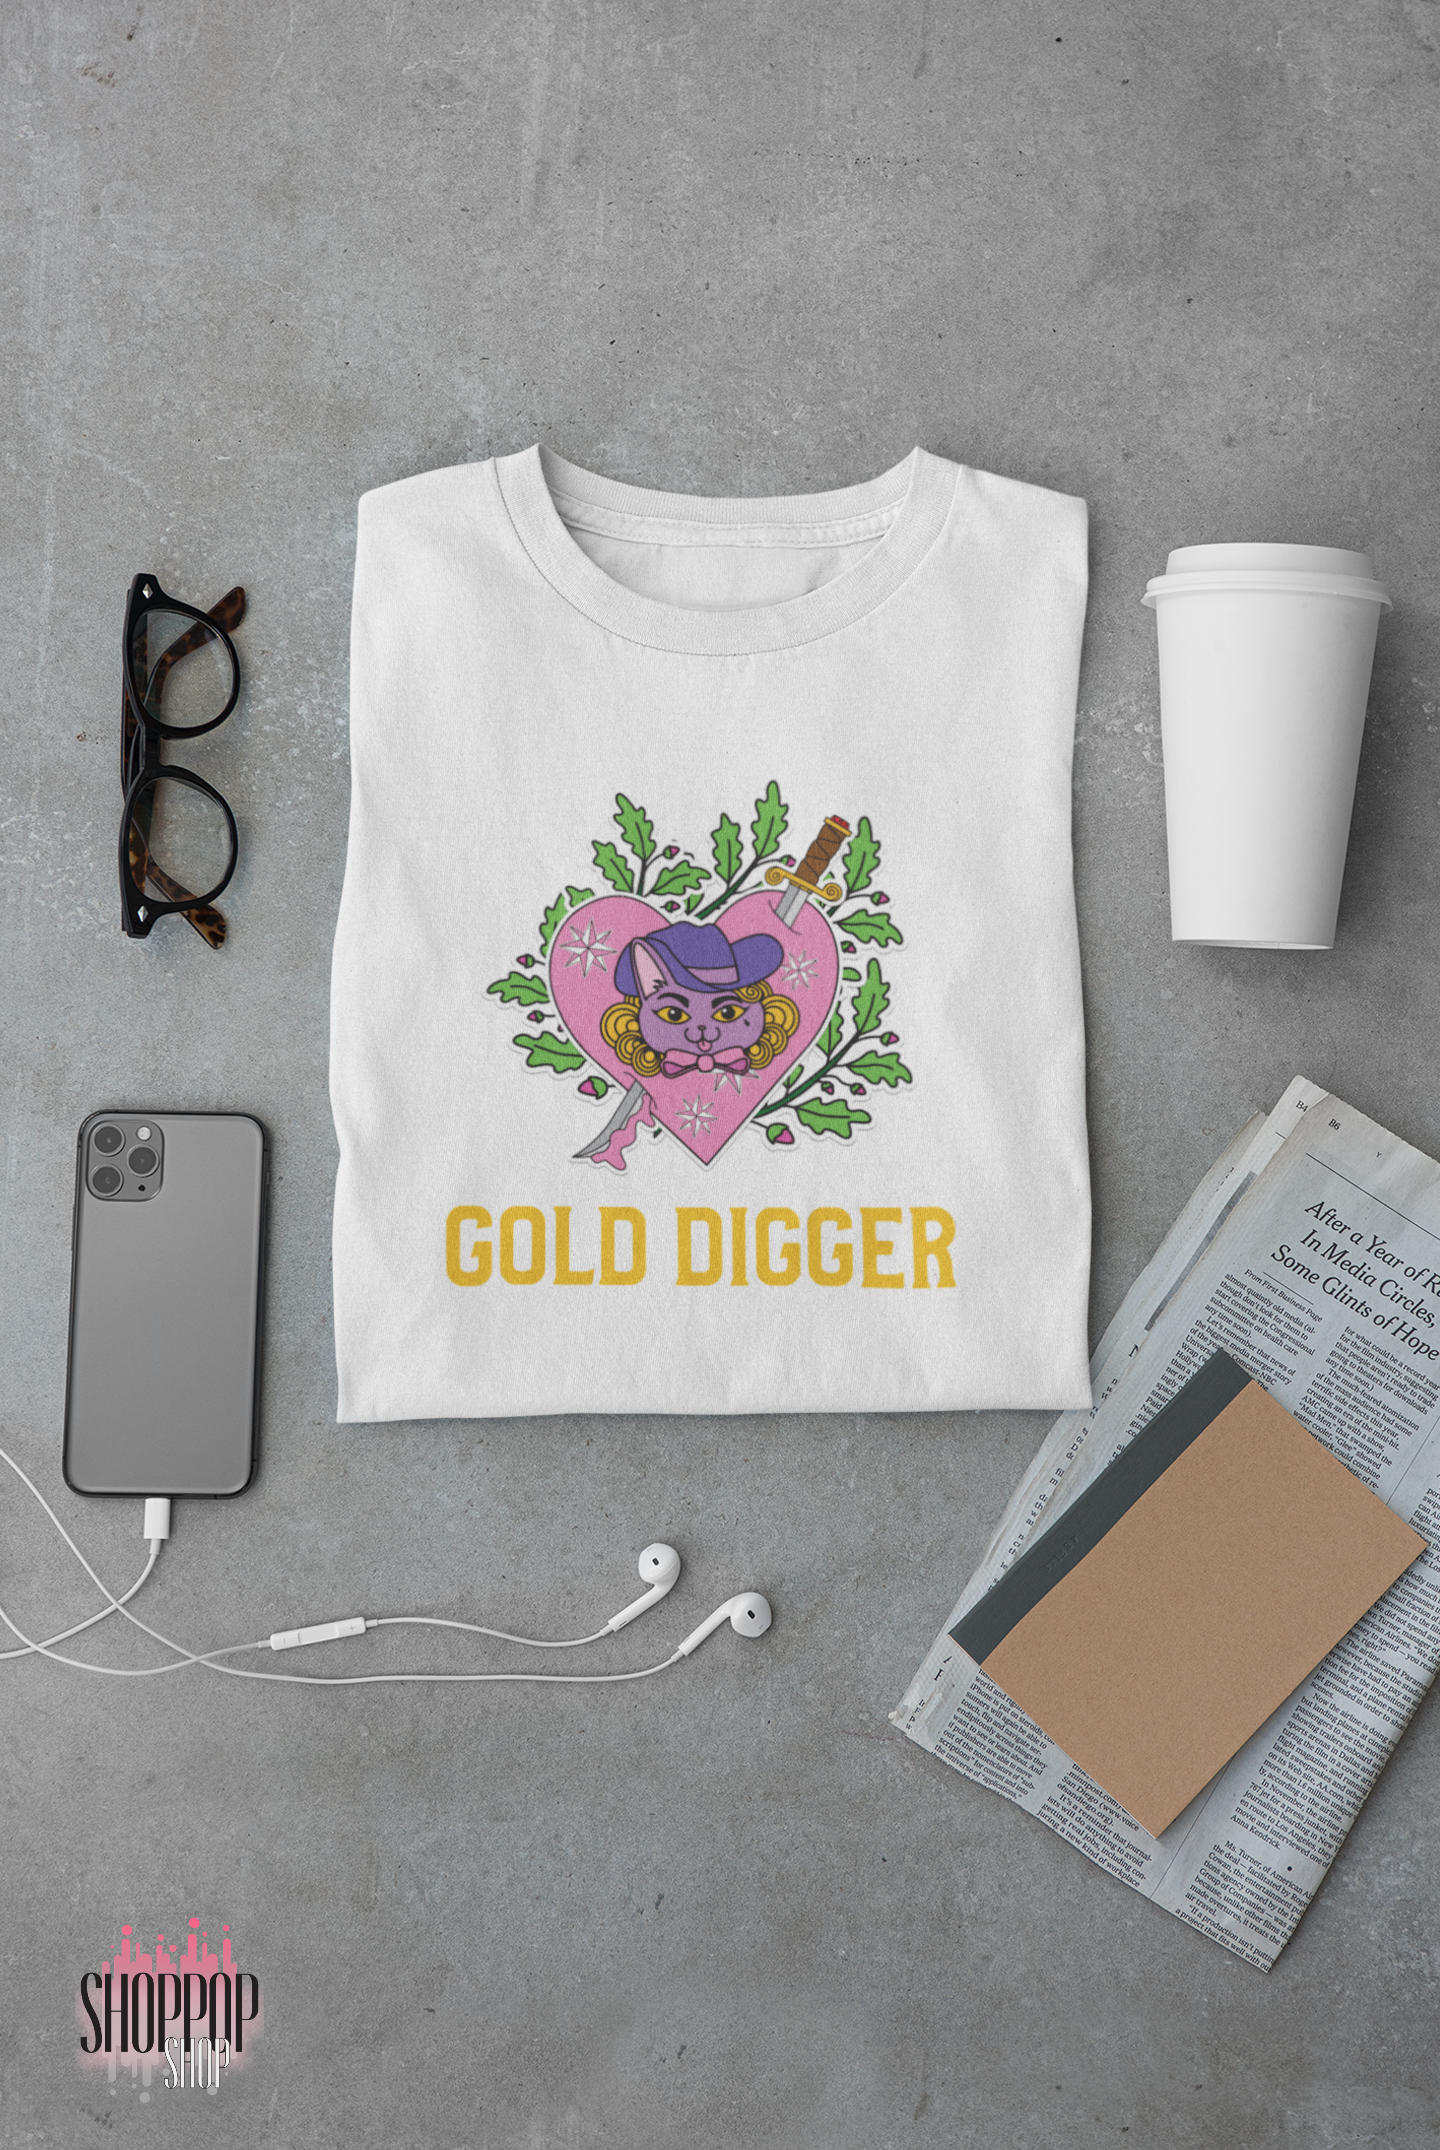 Gold digger - organic tee